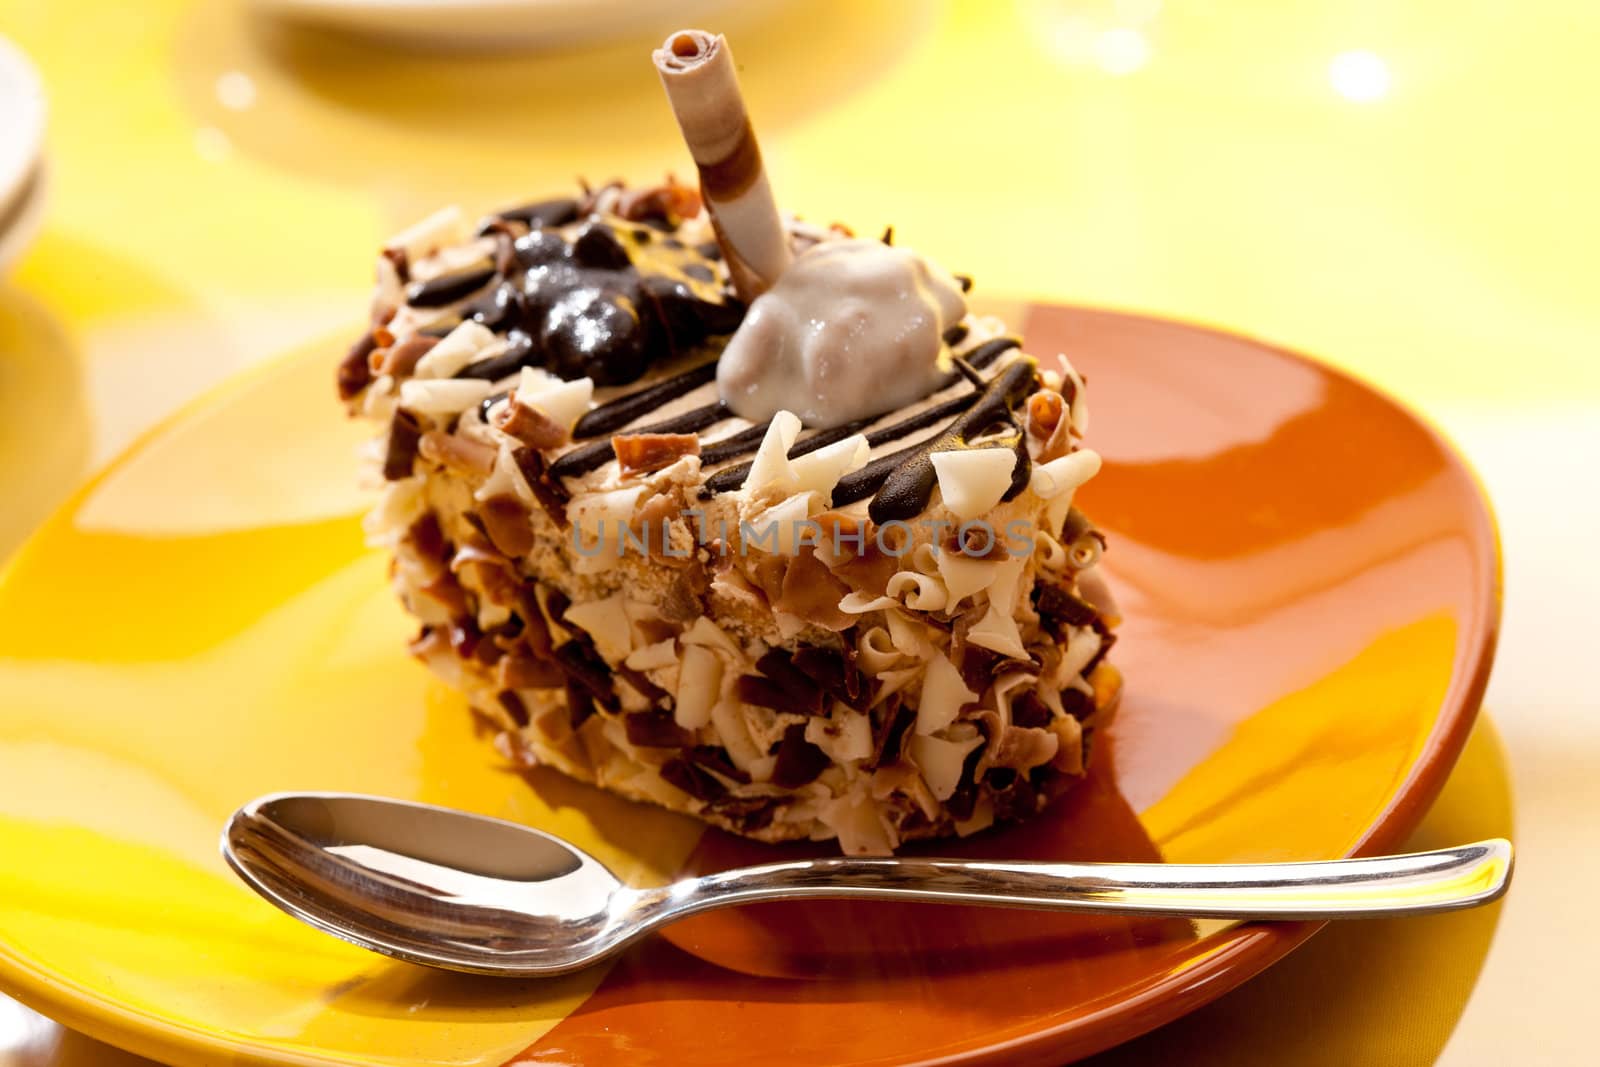 food series: sweet chocolate iced cake with coffee